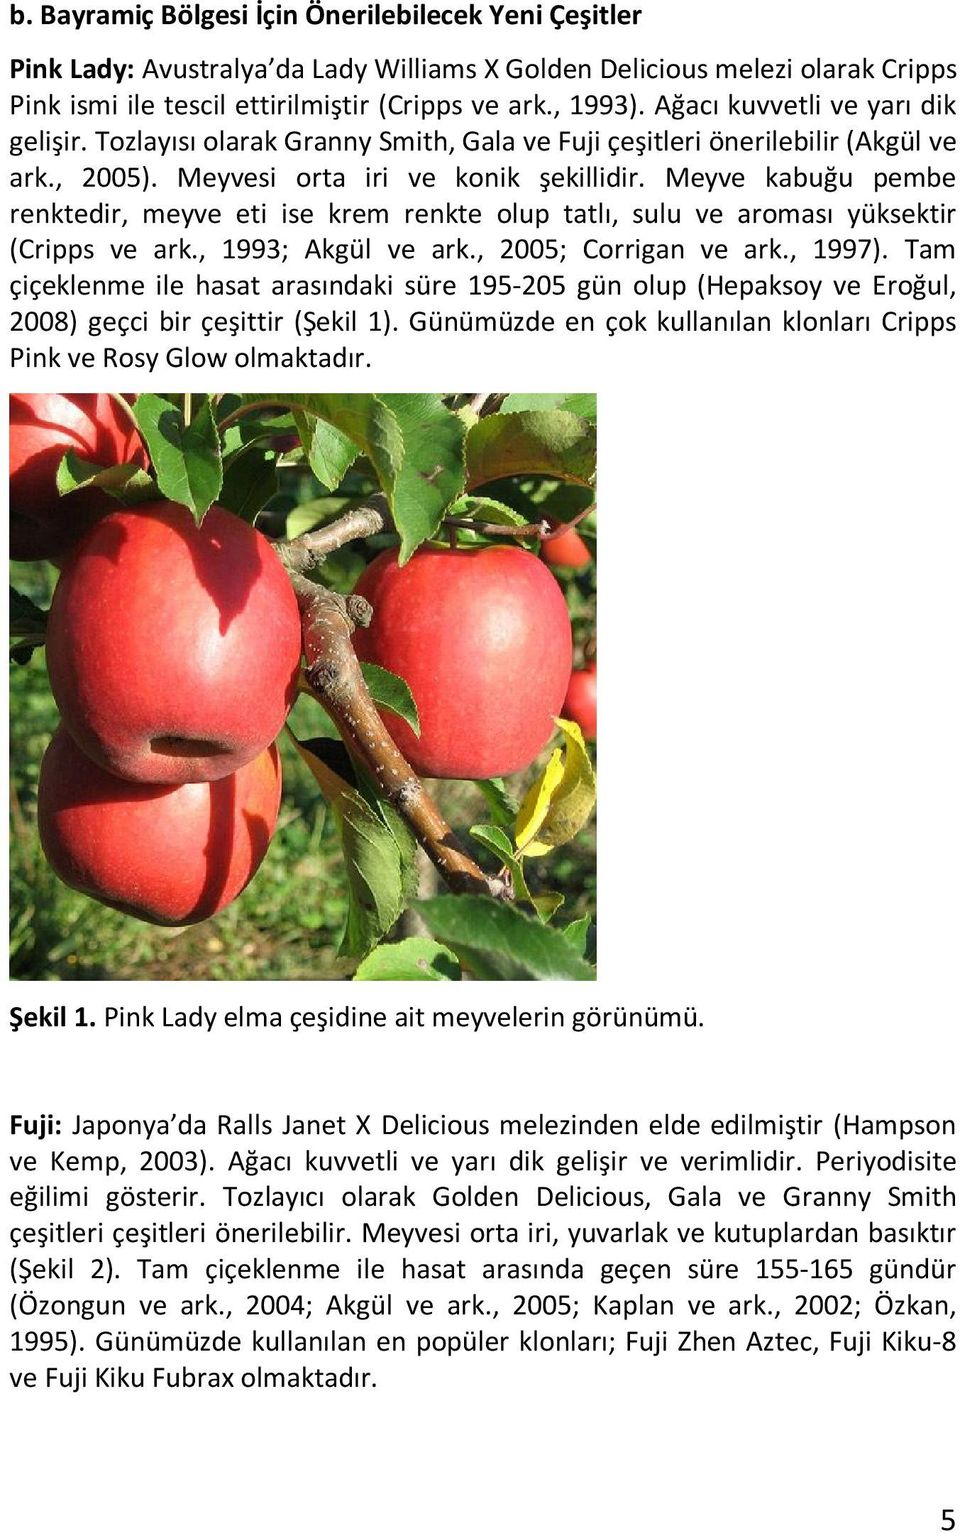 Meyve kabuğu pembe renktedir, meyve eti ise krem renkte olup tatlı, sulu ve aroması yüksektir (Cripps ve ark., 1993; Akgül ve ark., 2005; Corrigan ve ark., 1997).